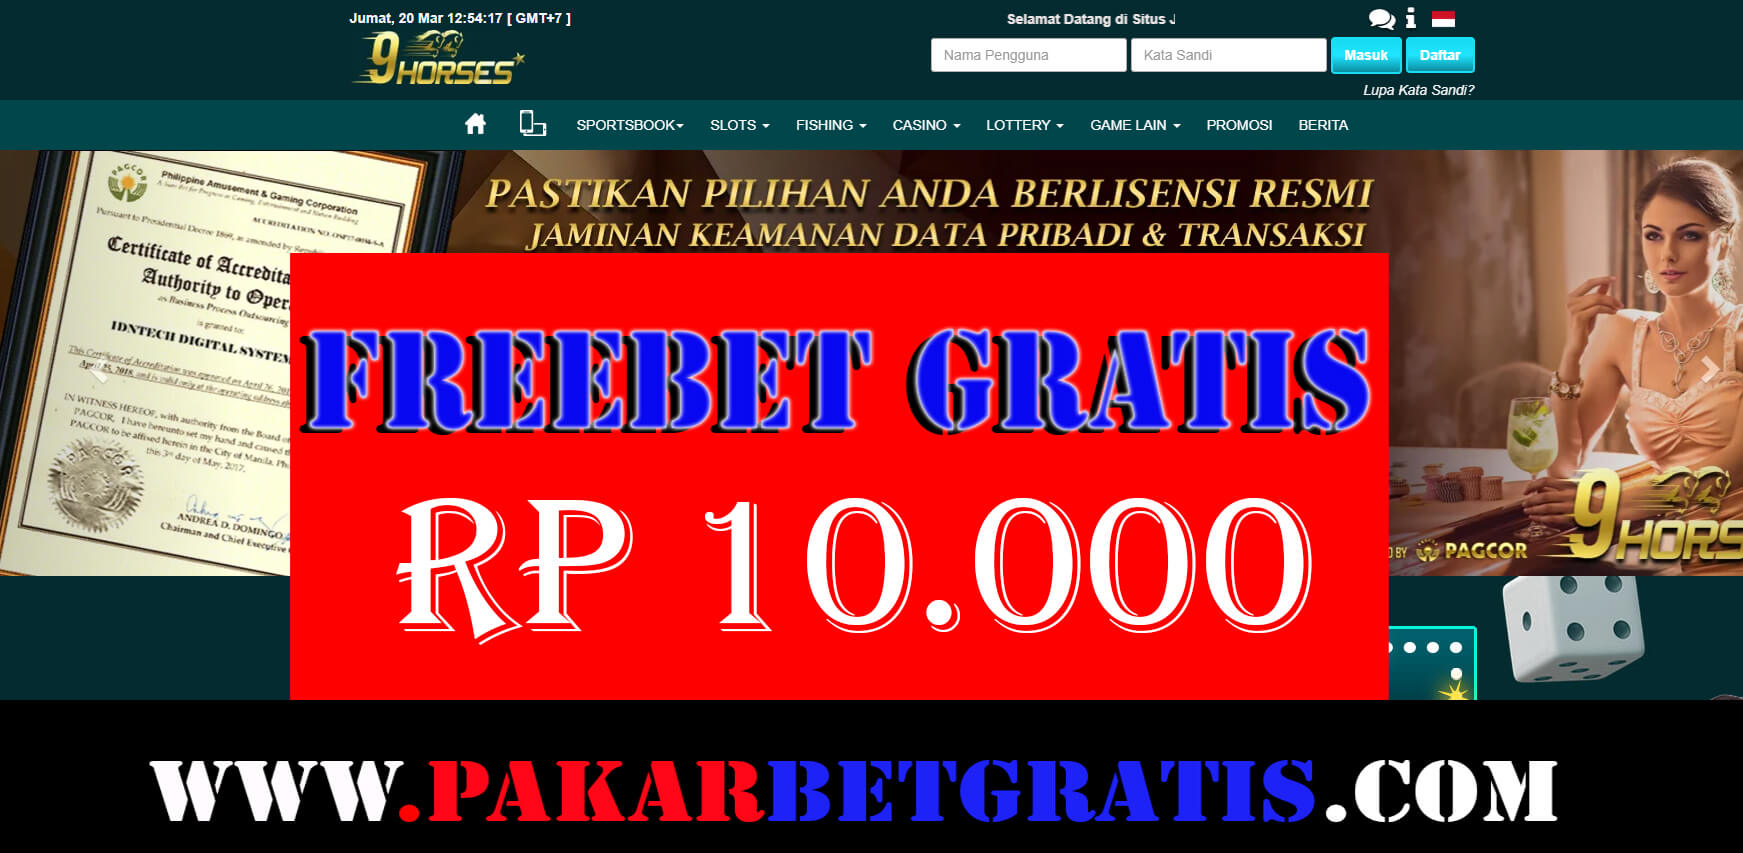 Freebet Gratis 9HORses Rp 10.000 TAnpa deposit